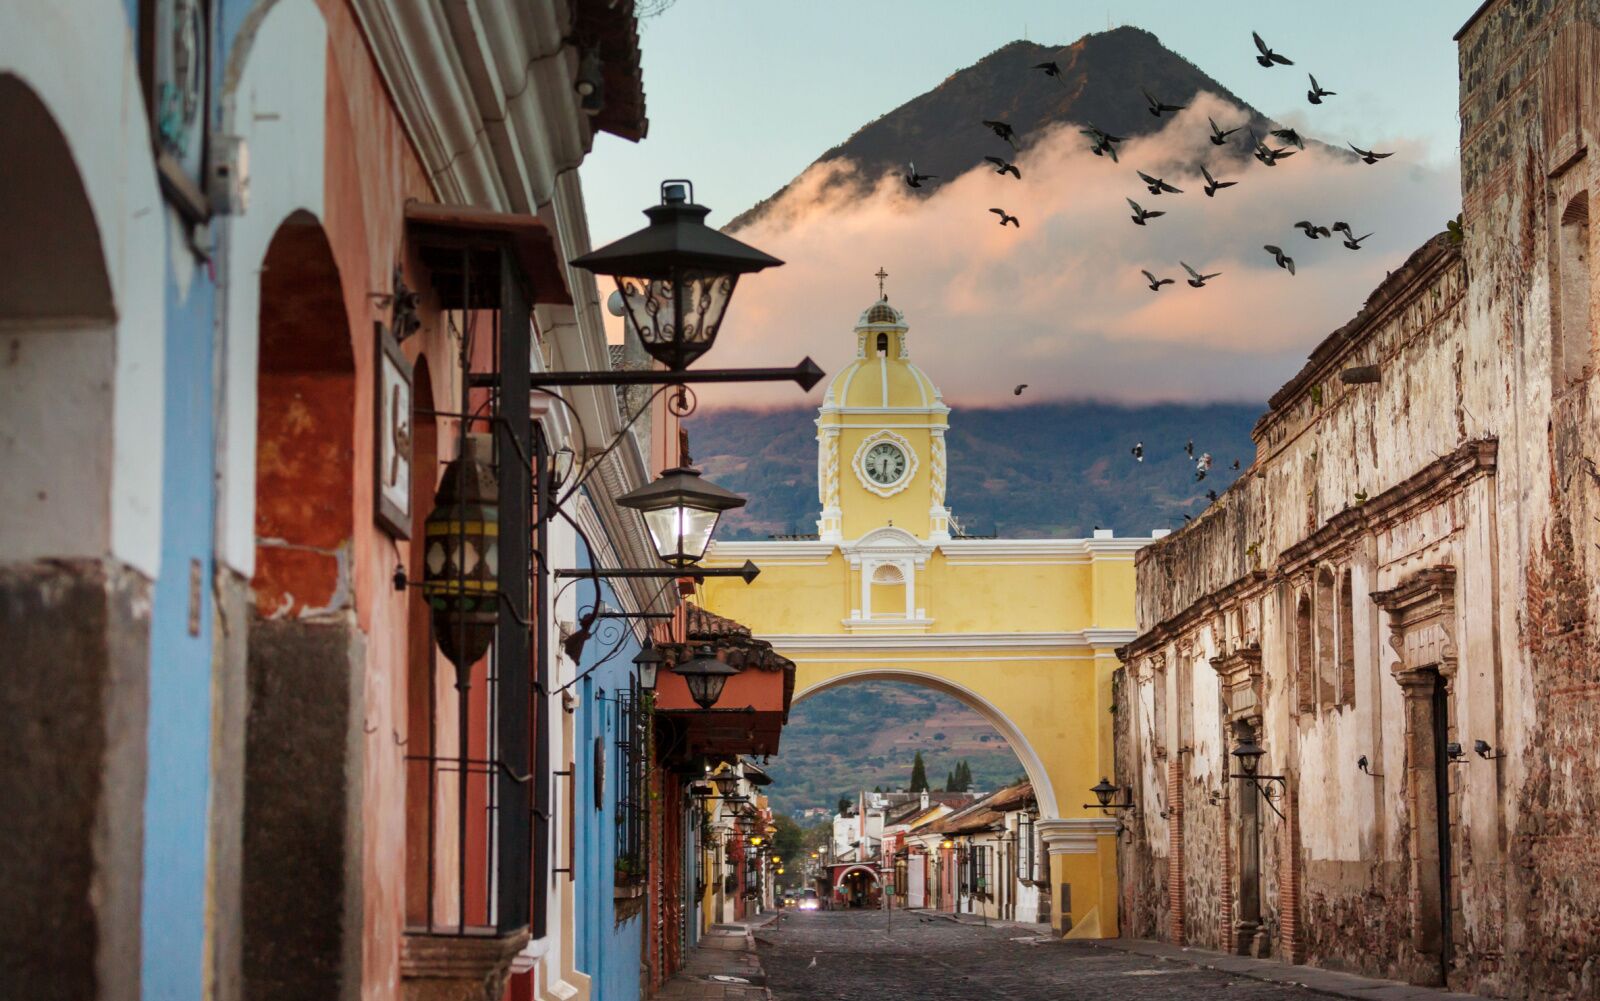 Antigua, guatemala - a city near many guatemala volcano hikes